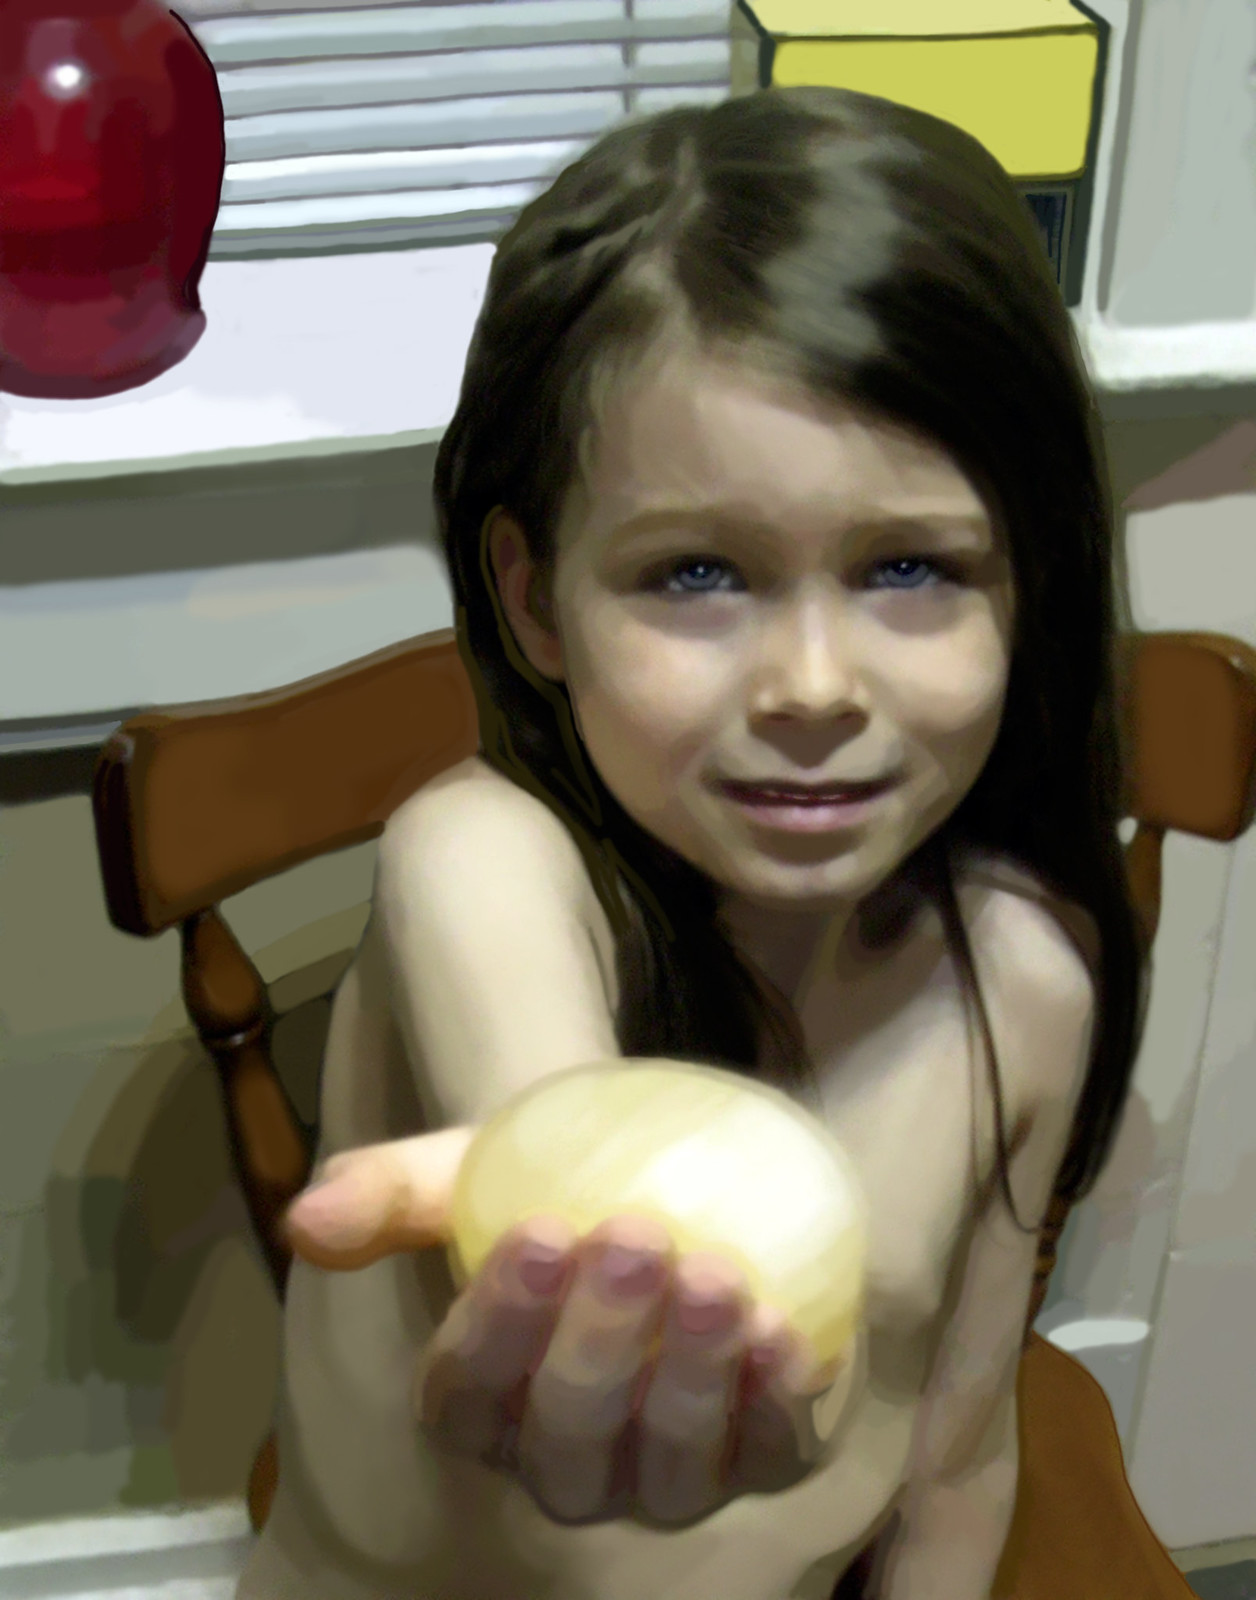 The Golden Egg 1, 2004